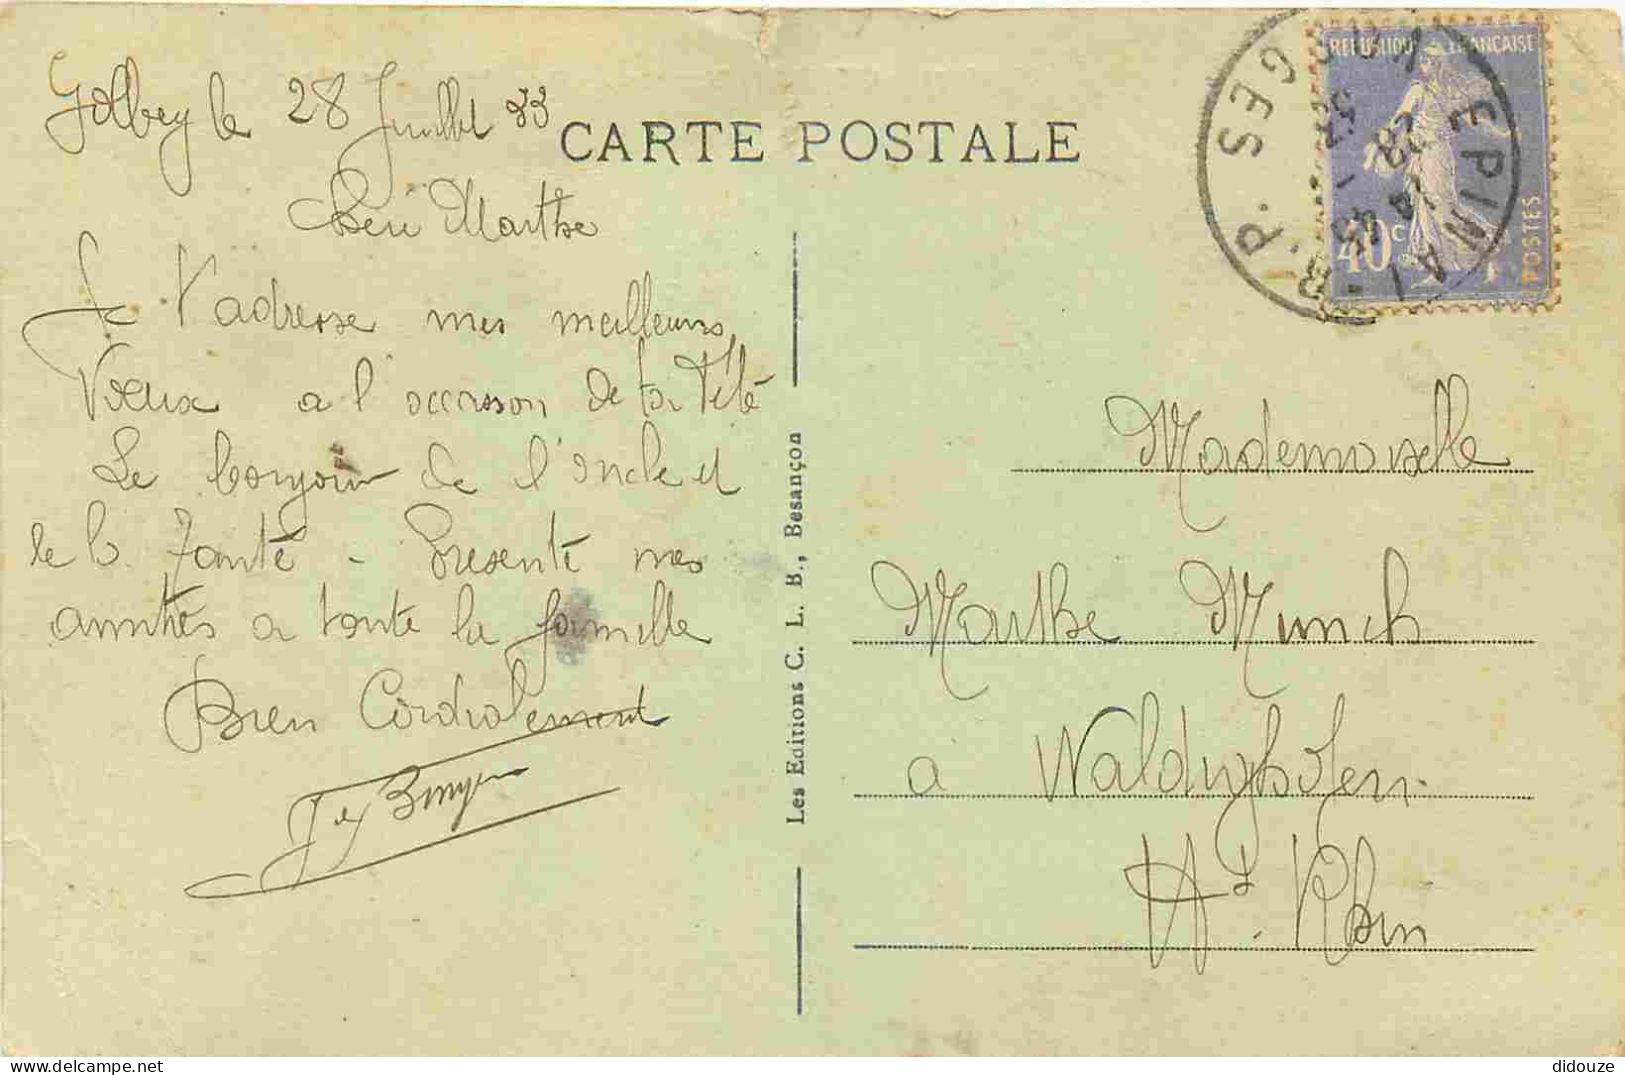 88 - Golbey - Rue De La Moselle - Animée - Café Tabac - Correspondance - CPA - Oblitération Ronde De 1933 - Etat Arraché - Golbey